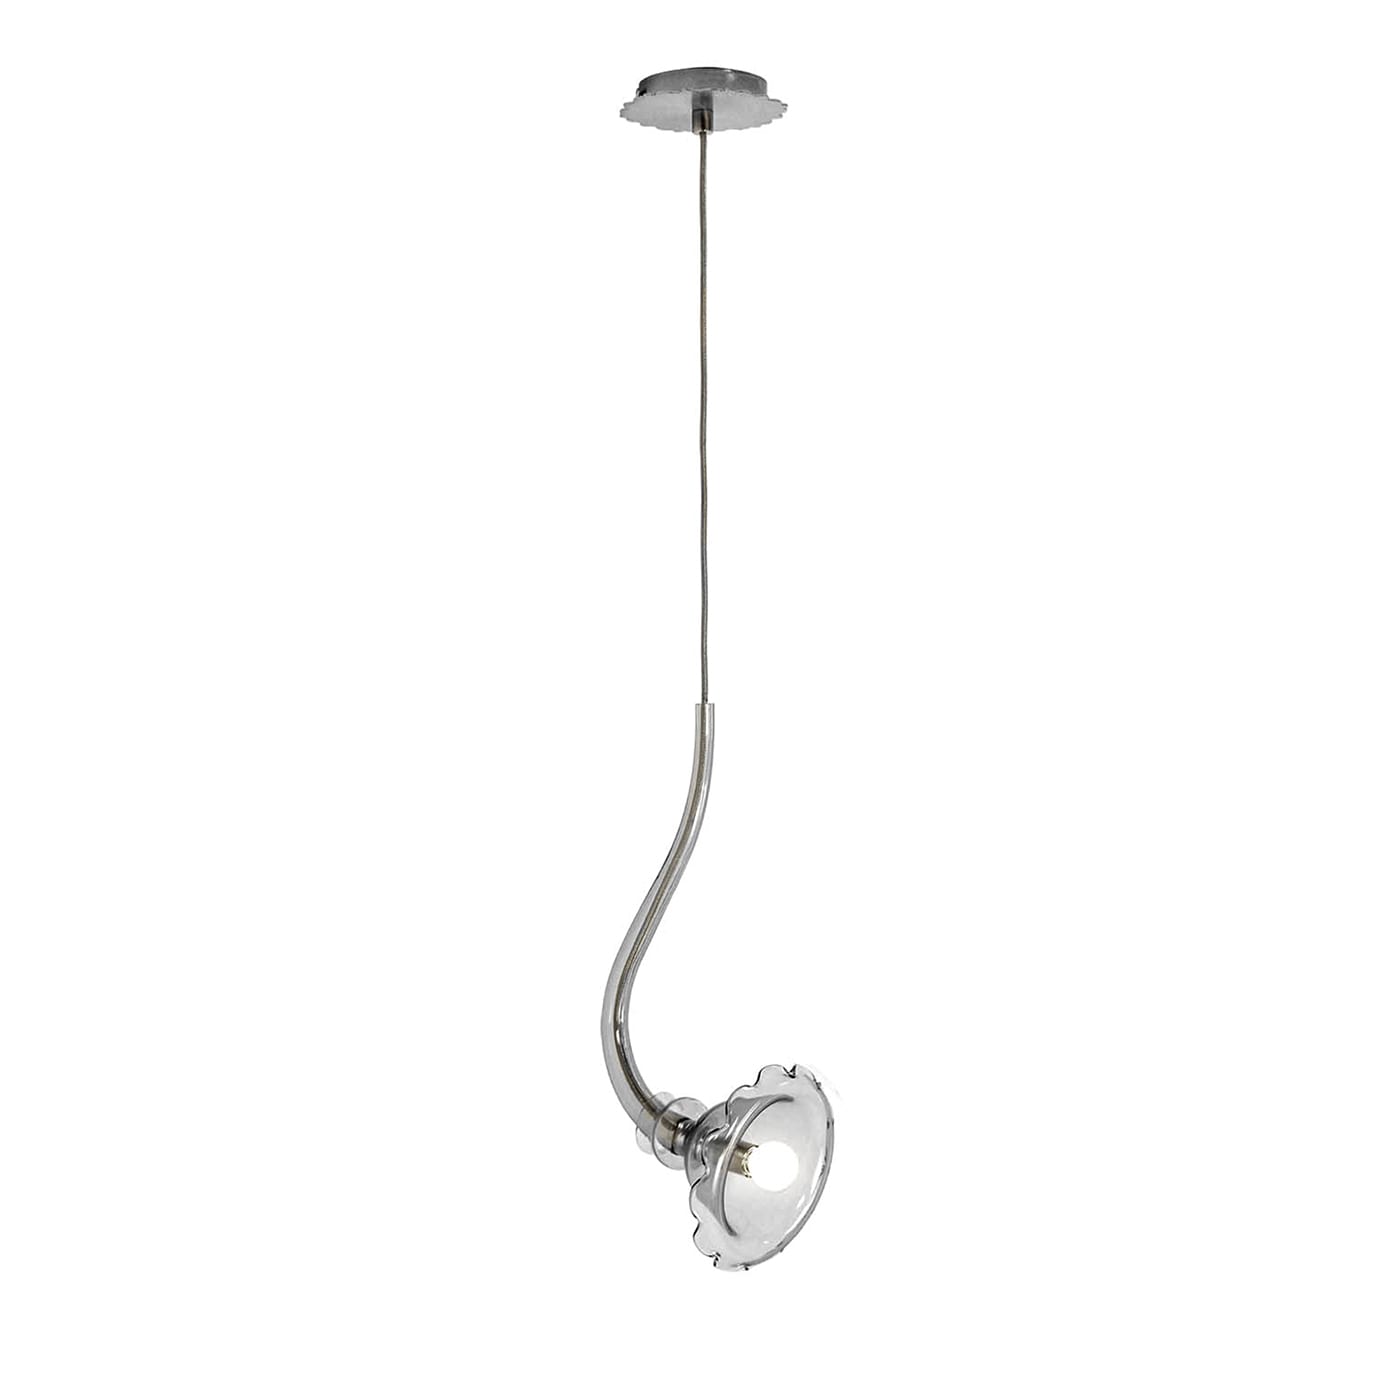 Ikebana Pendant Lamp by Romani Saccani Architetti Associati - Multiforme